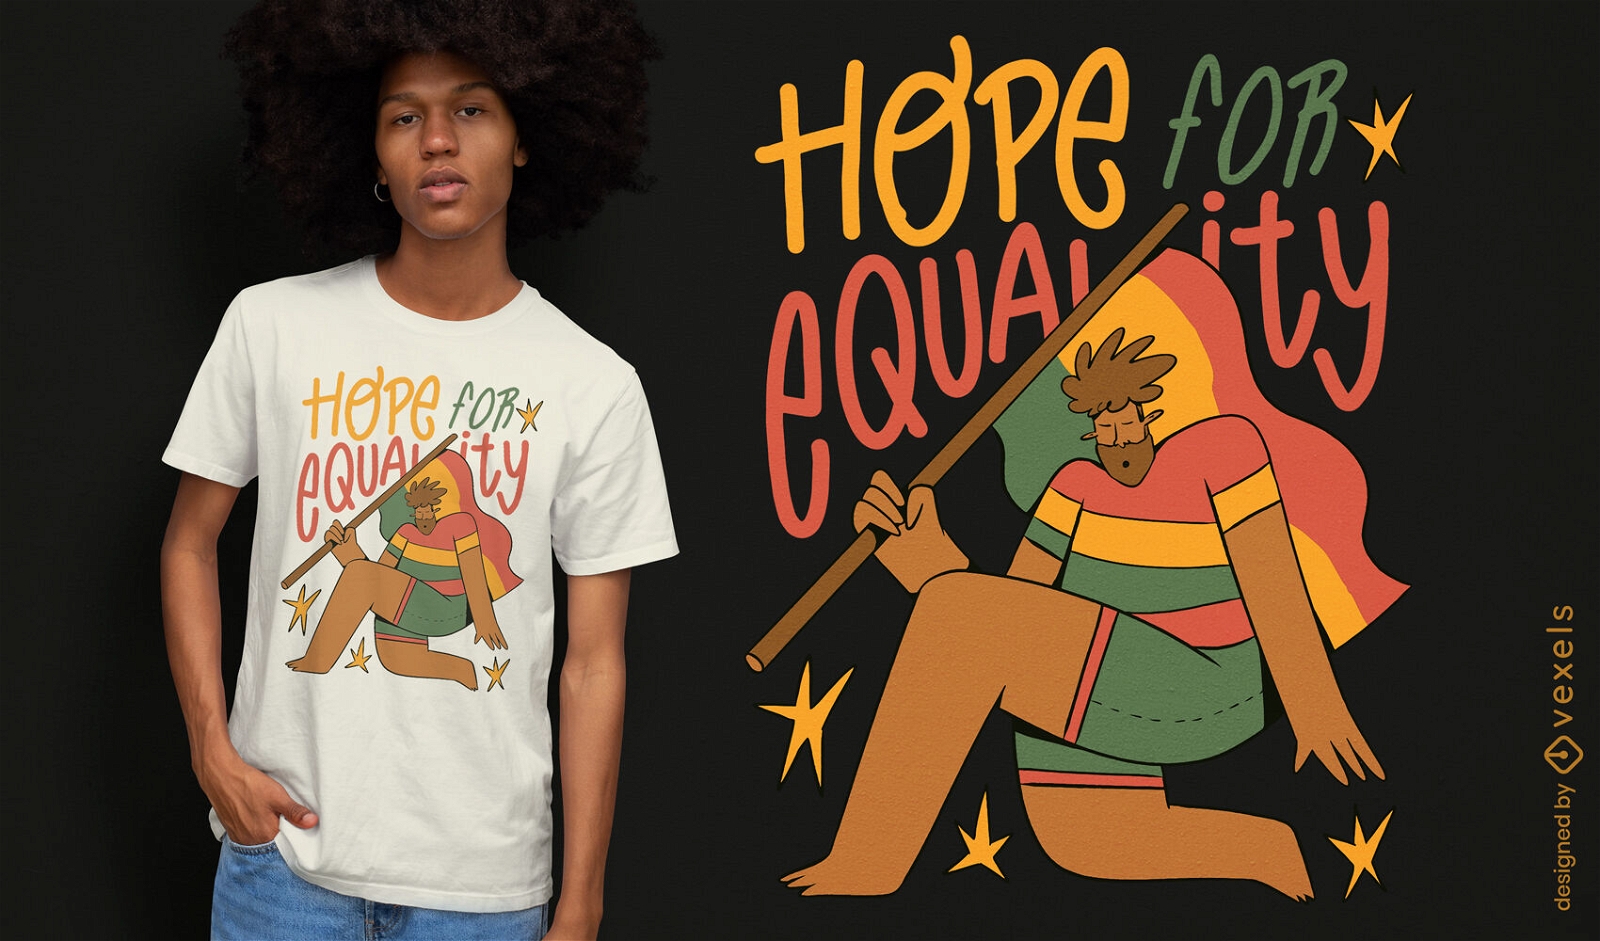 Dise?o de camiseta de esperanza para la igualdad.